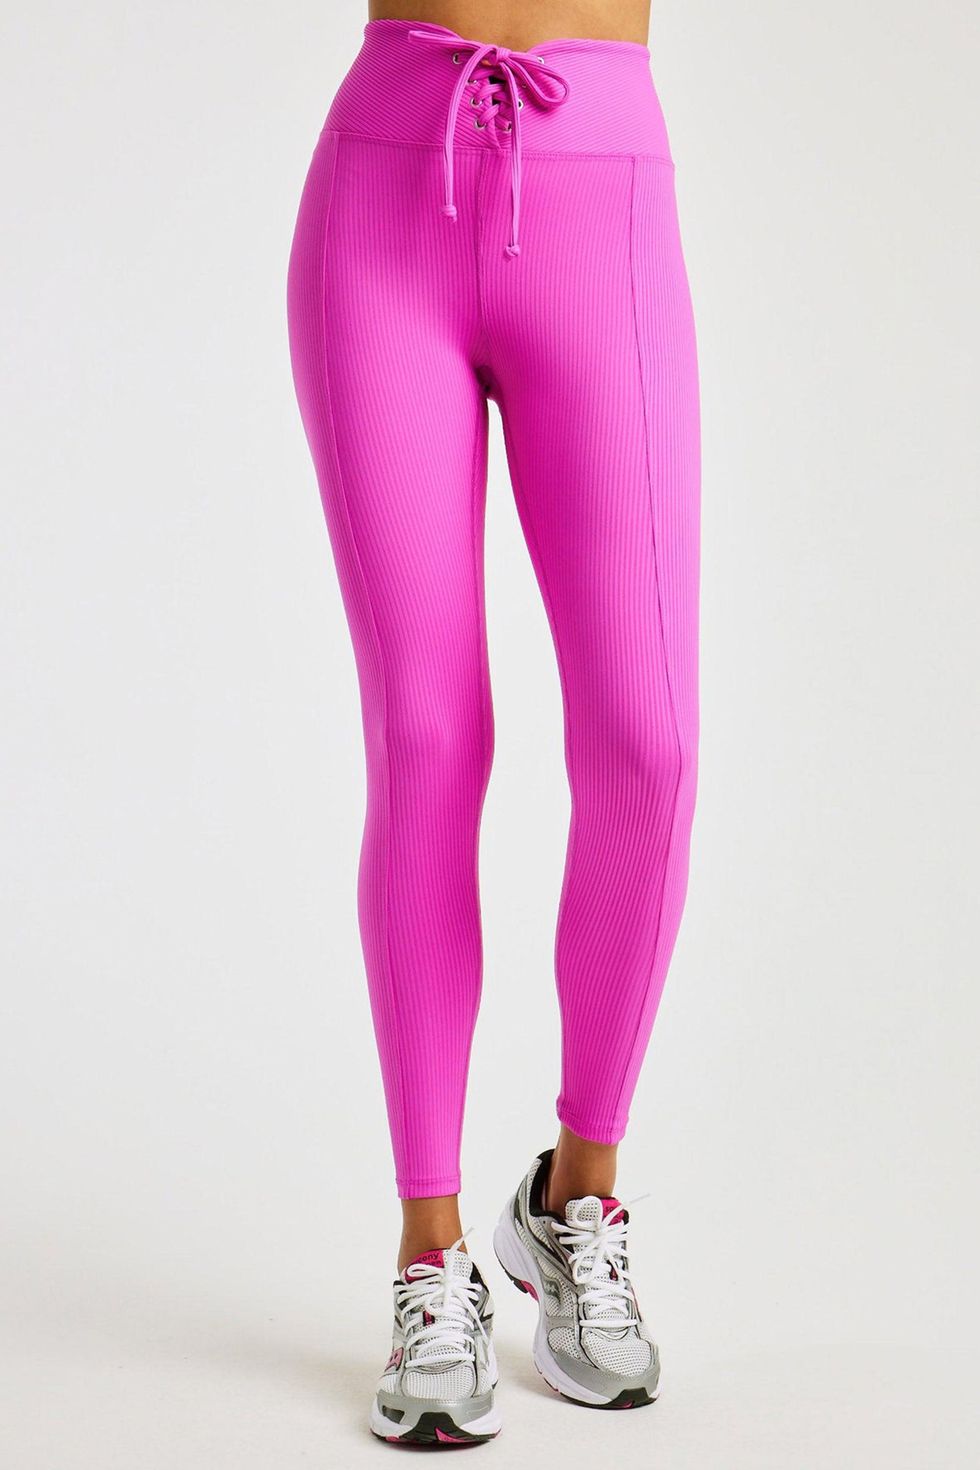 Erica.Ha via @Emilyy.Haa 's TikTok - @LuluLemon Hold Tight Long-Sleeve  Shirt in Pink Peony ($68) - @GymShark TRAINING LEGGINGS in N